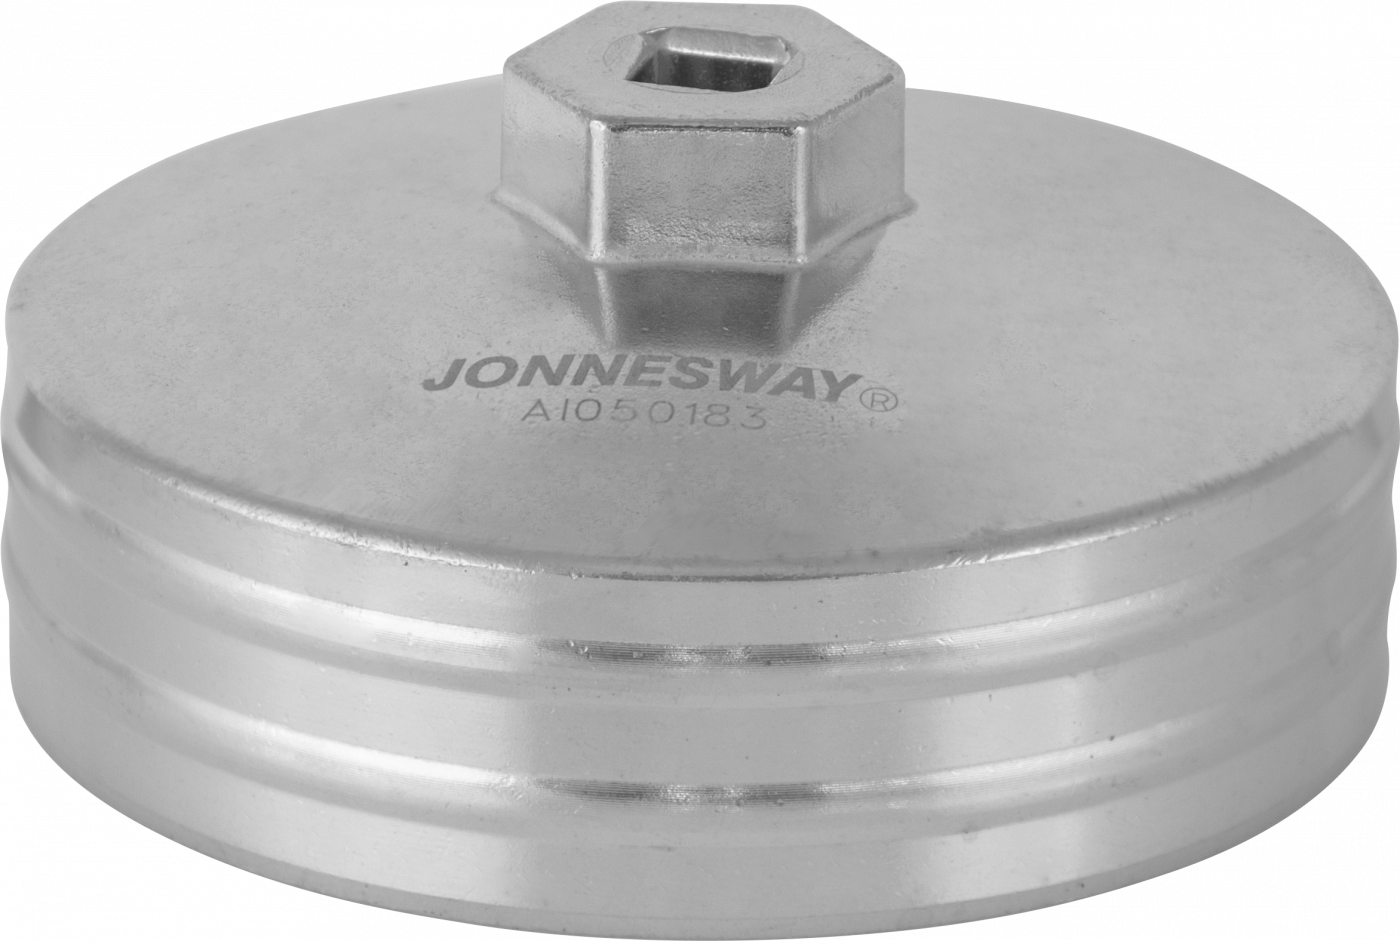 AI050183 Специальная торцевая головка для демонтажа корпусных масляных фильтров дизельных двигателей VAG JONNESWAY